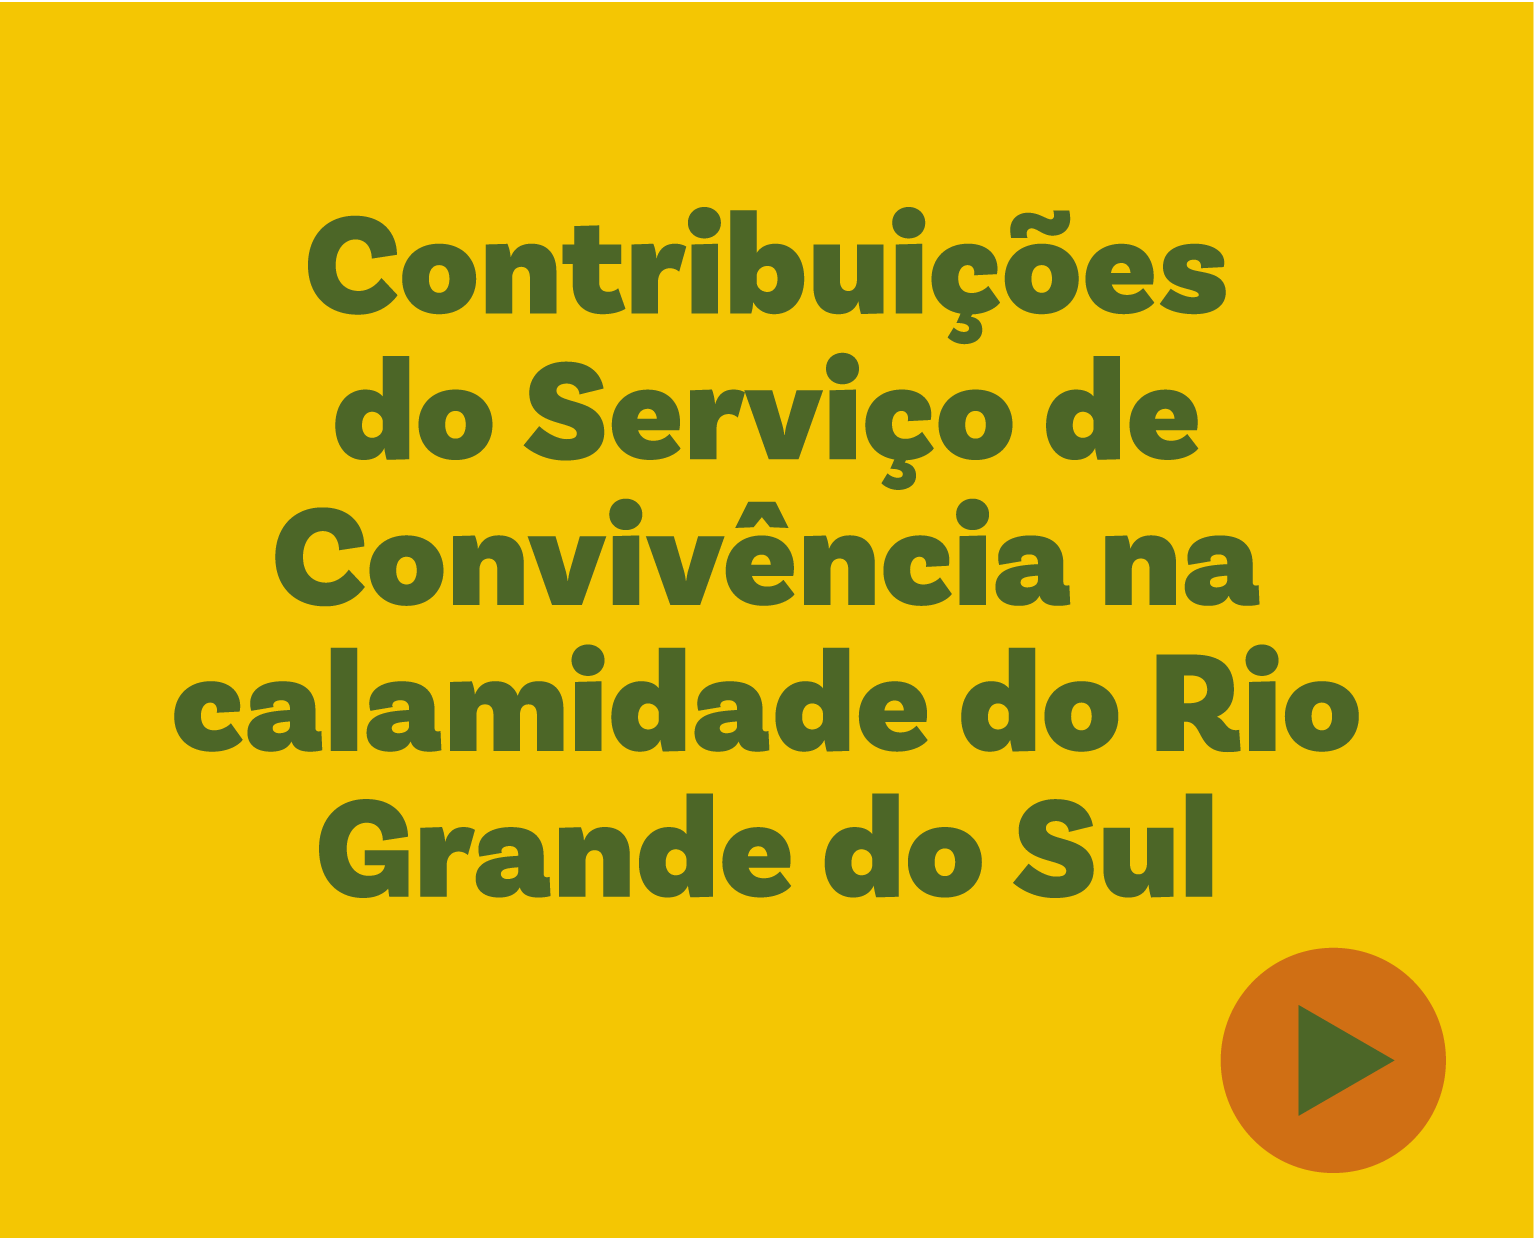 Contribuições do Serviço de Convivência na calamidade do Rio Grande do Sul